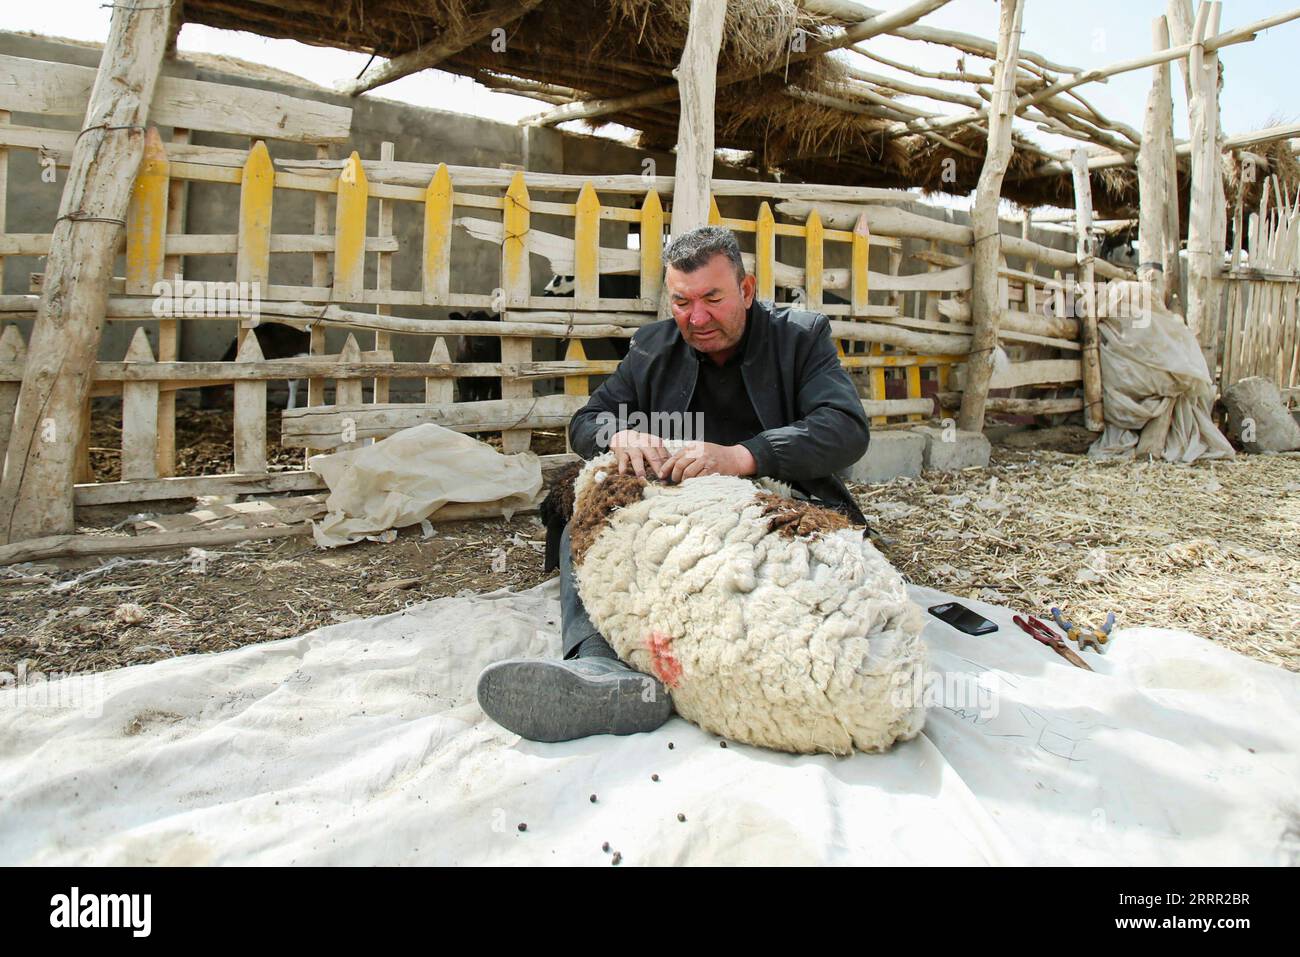 230427 -- YULI, 27 aprile 2023 -- Arkin Reyim cede una pecora al suo recinto di pecore nel villaggio Bax Mali della contea di Yuli, regione autonoma di Xinjiang Uygur della Cina nord-occidentale, 29 marzo 2023. Arkin Reyim è un coltivatore di cotone di 51 anni con più di 300 mu 20 ettari di campi di cotone nel villaggio di Bax Mali della contea di Yuli nello Xinjiang. Il coraggio e la visione unica di Arkin lo hanno spinto a iniziare a coltivare cotone nel 2004, quando si è sposato con la moglie Hasiyat Kasim. Da allora, Arkin si è dedicato alla coltivazione del cotone per oltre 10 anni, rendendolo così un esperto coltivatore di cotone Foto Stock